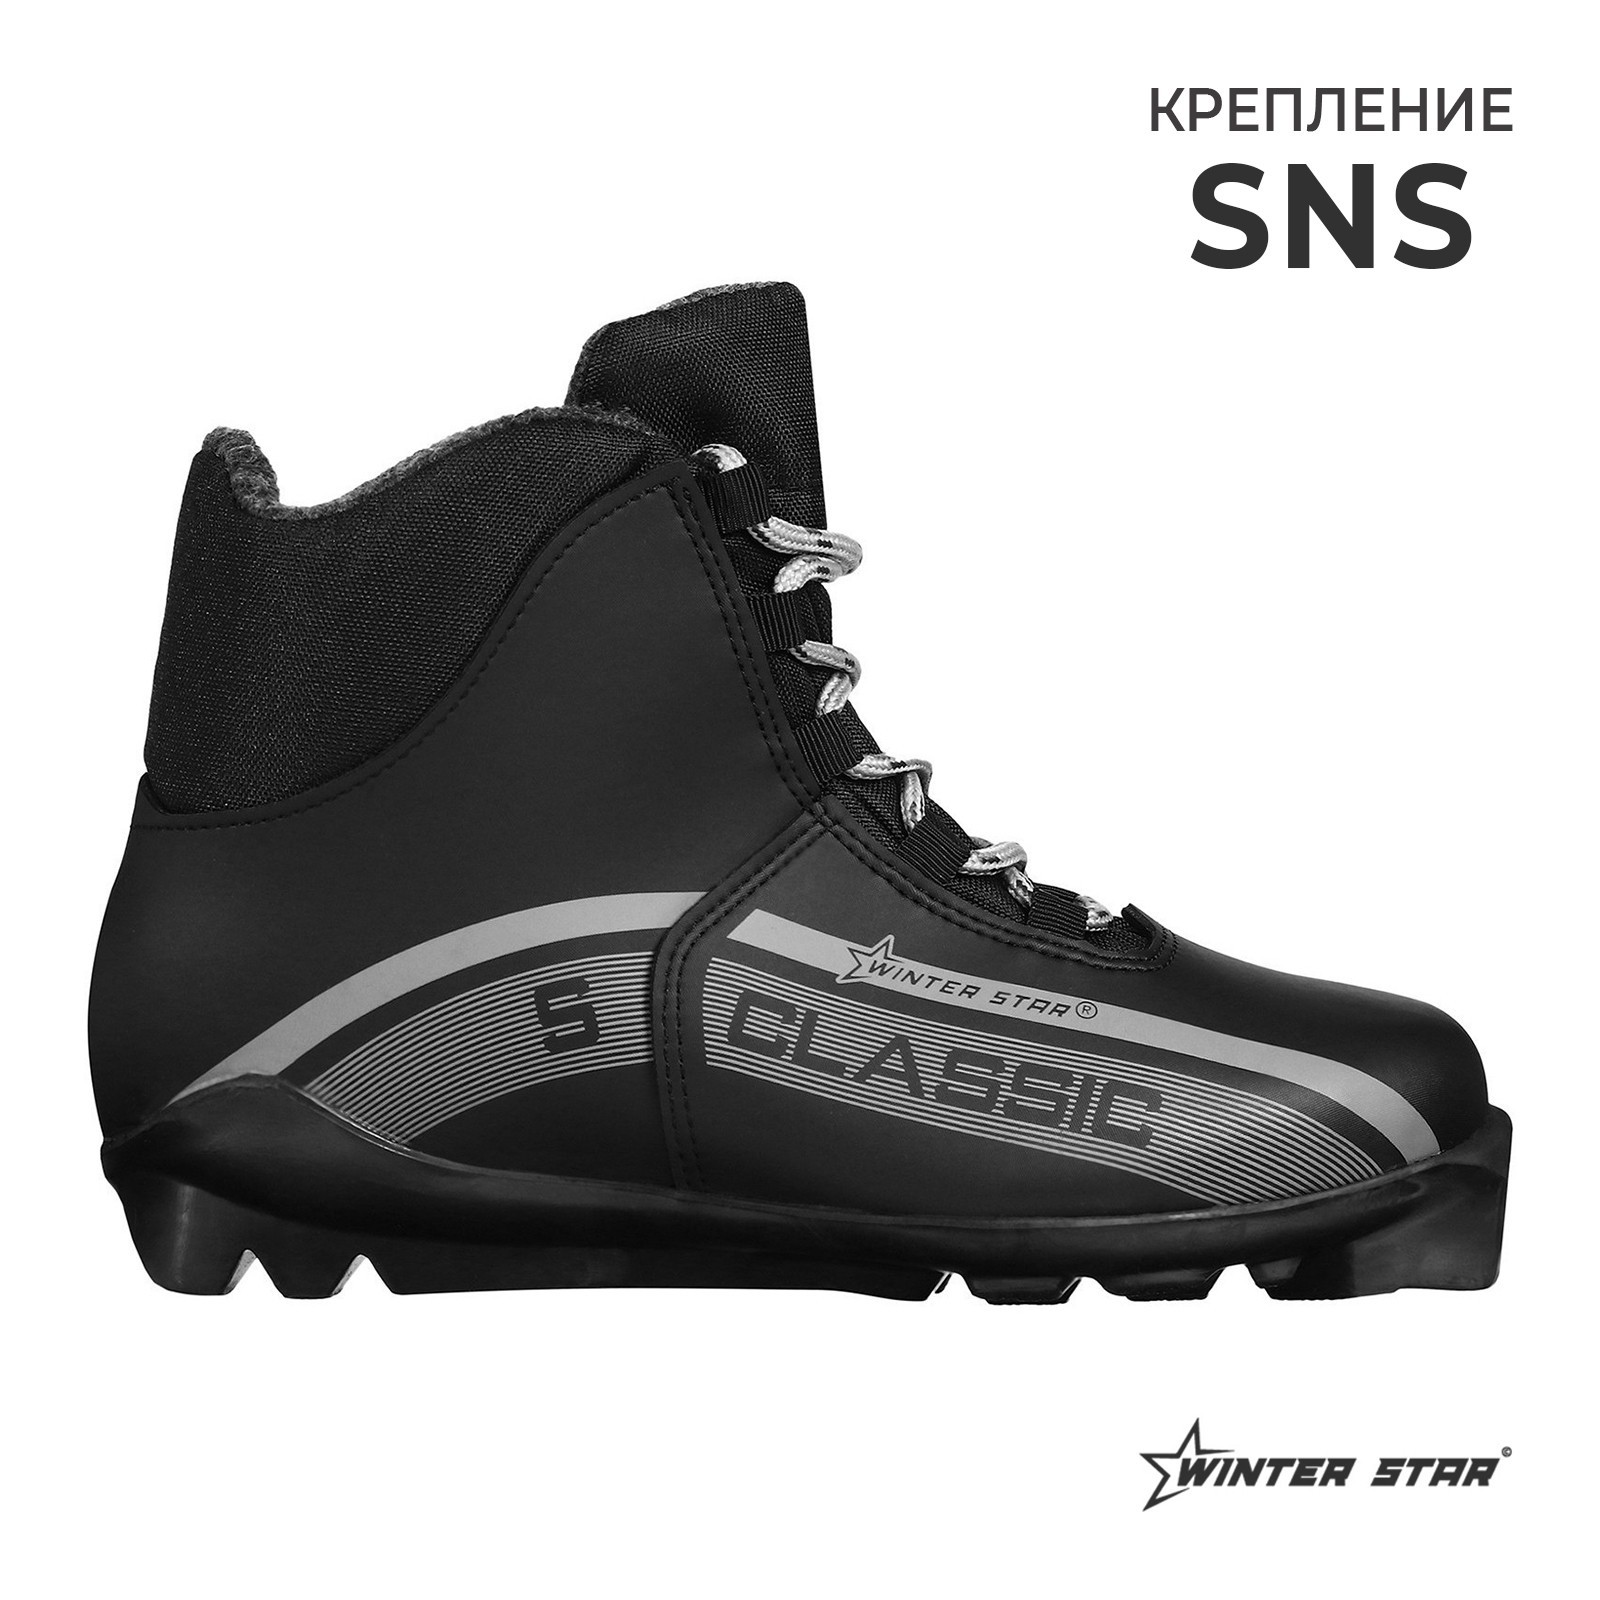 Ботинки лыжные Winter Star classic, SNS, р. 36, цвет чёрный, лого серый(9796155) - Купить по цене от 1 709.00 руб.